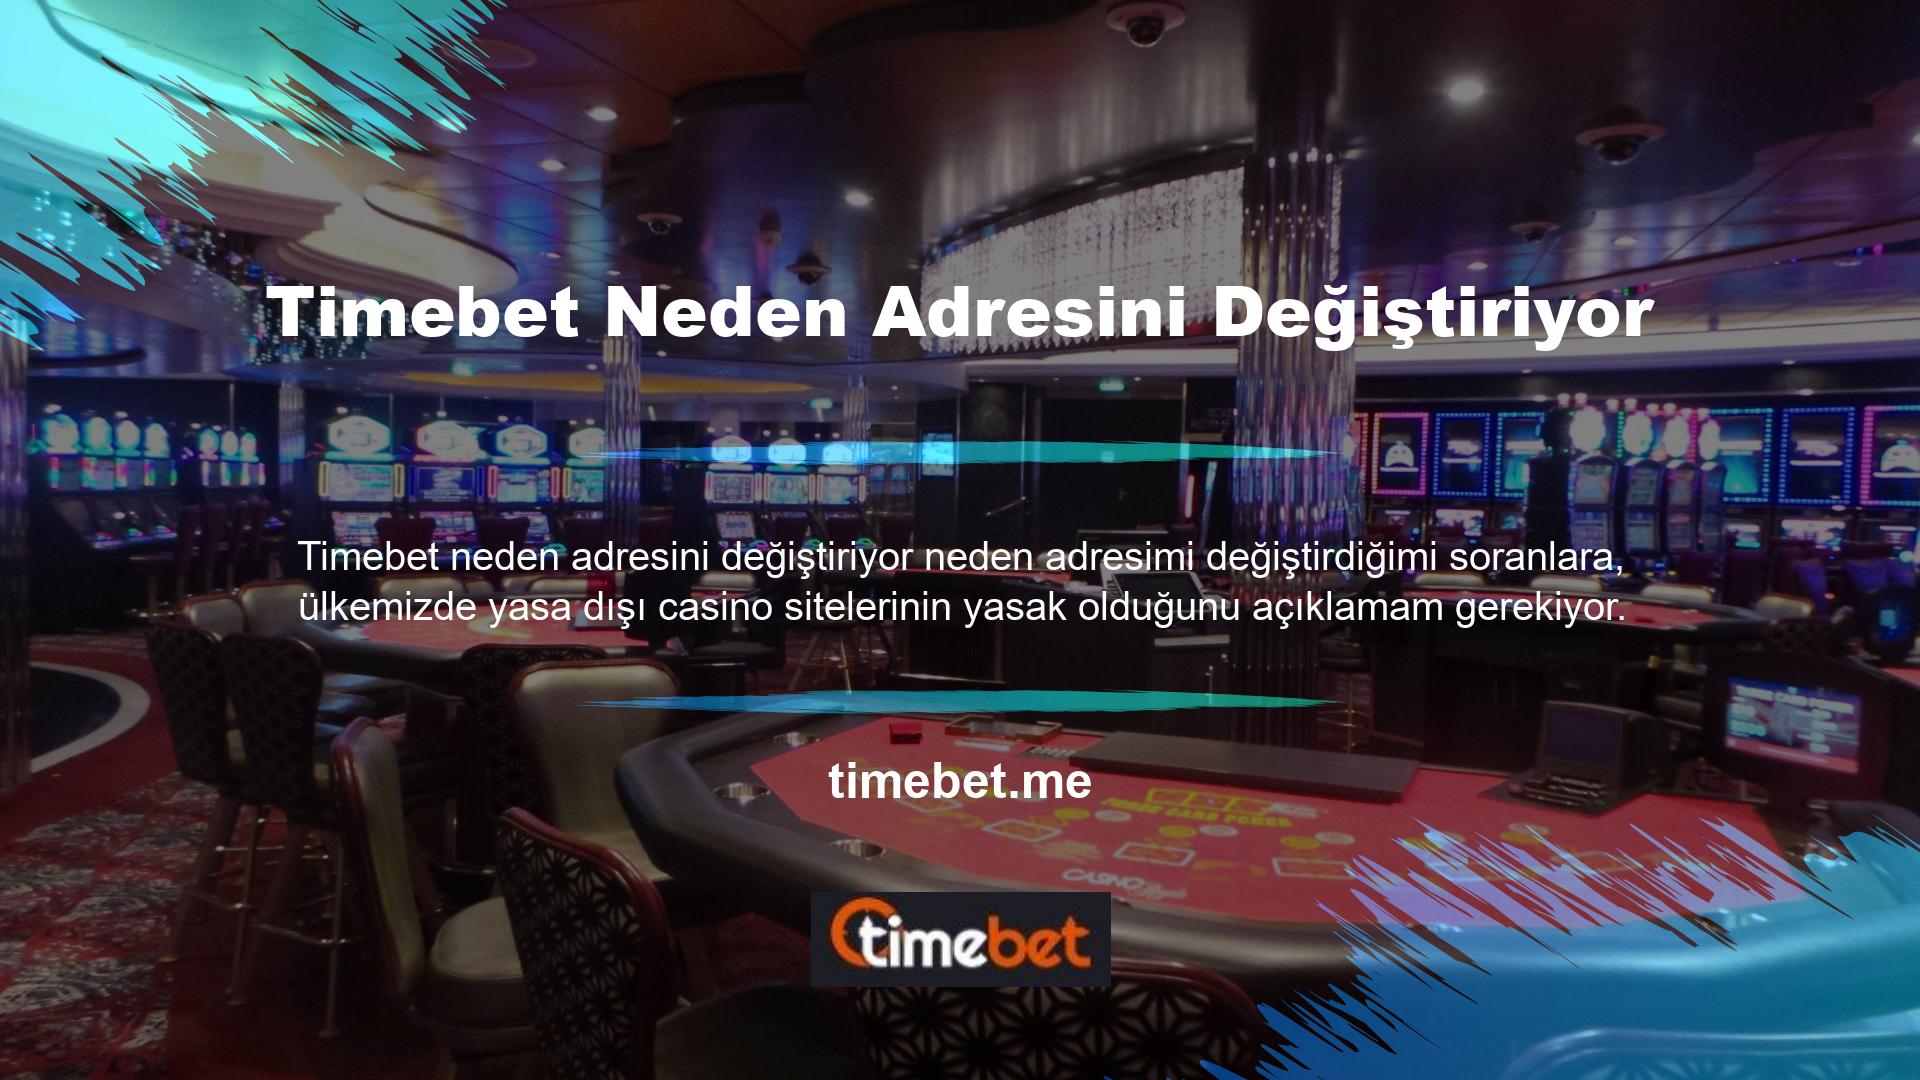 Timebet bahis sitesi, oyuncular için mükemmel hizmet anlayışı, yüksek oranlar ve zengin bonus seçenekleri ile sürekli gelişen bir platformdur